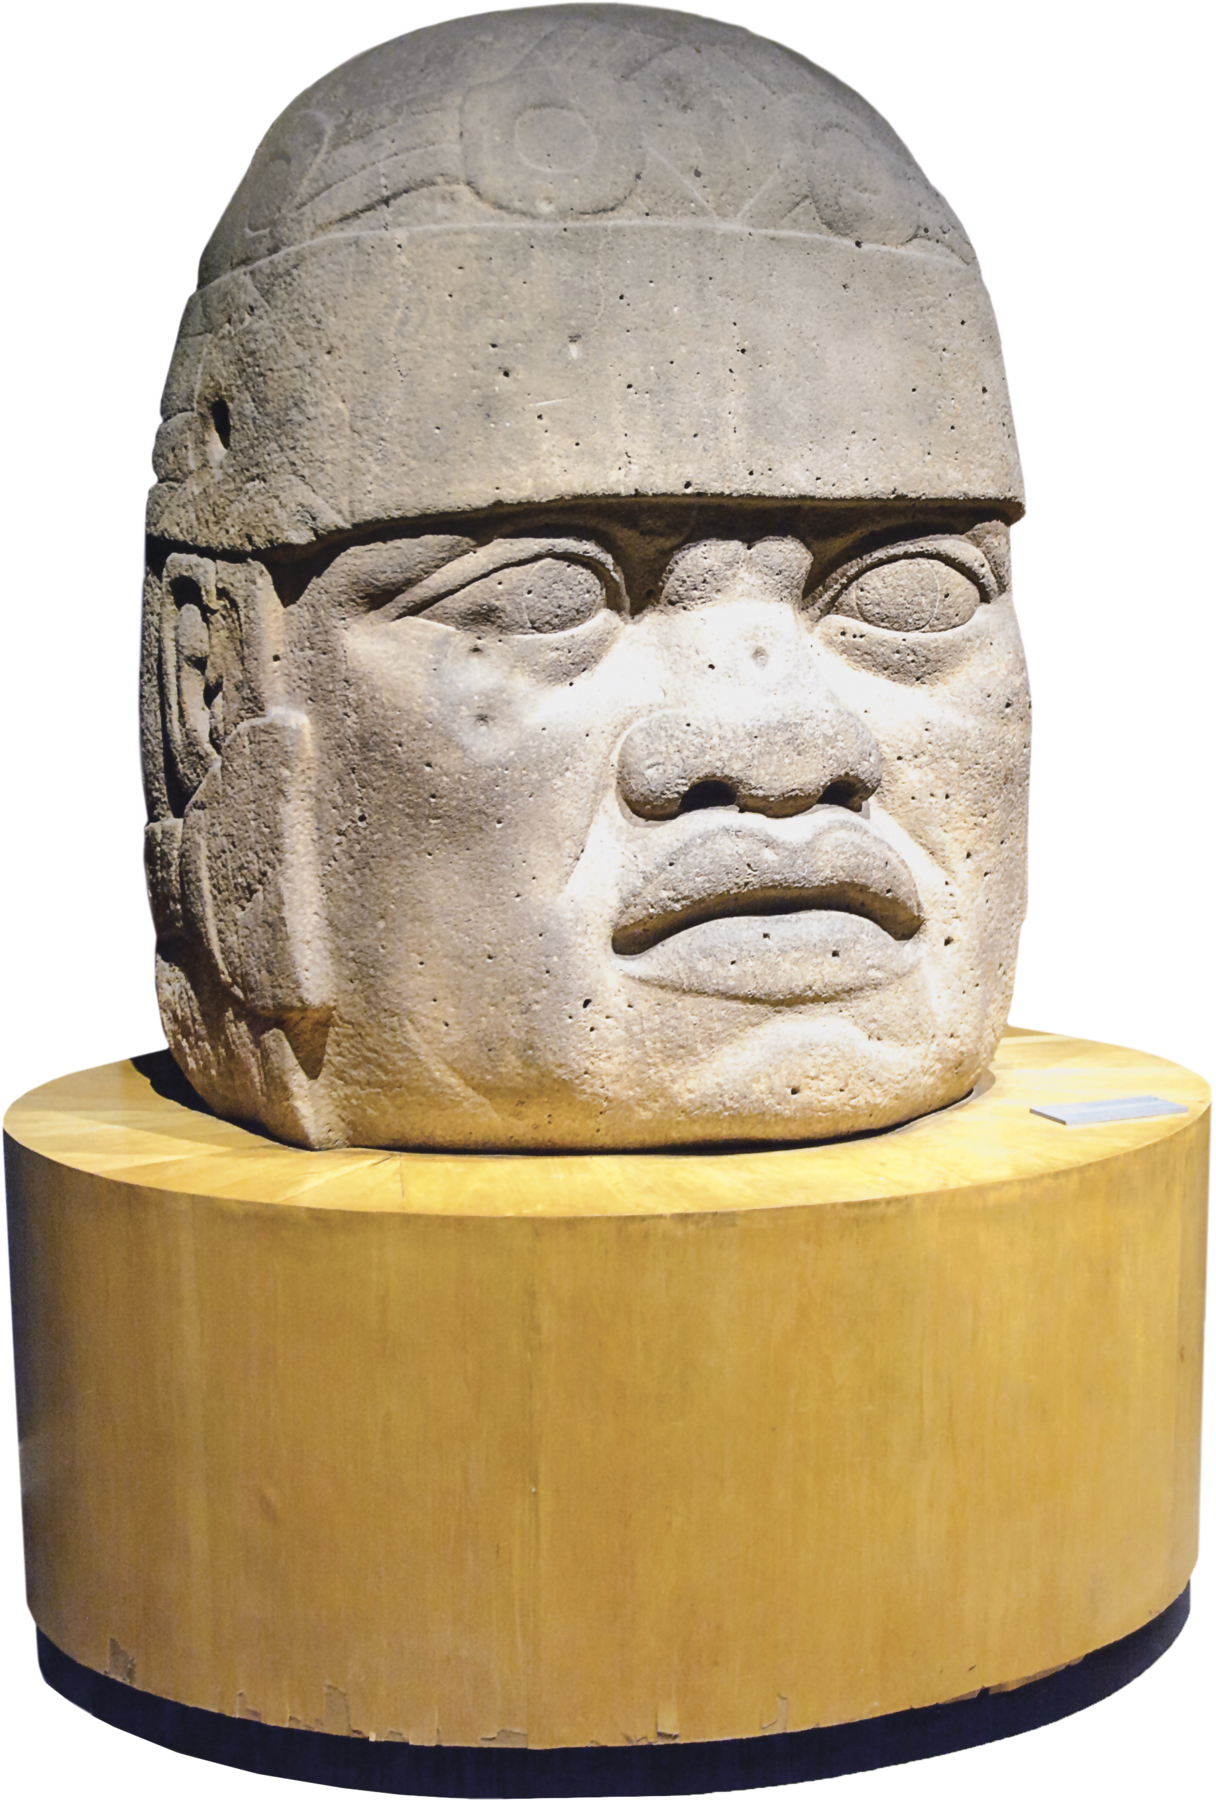 Escultura. Rosto com feições humanas sobre um suporte de madeira de formato circular. O rosto possui nariz com abas largas, lábios volumosos e um capacete ao redor da cabeça.